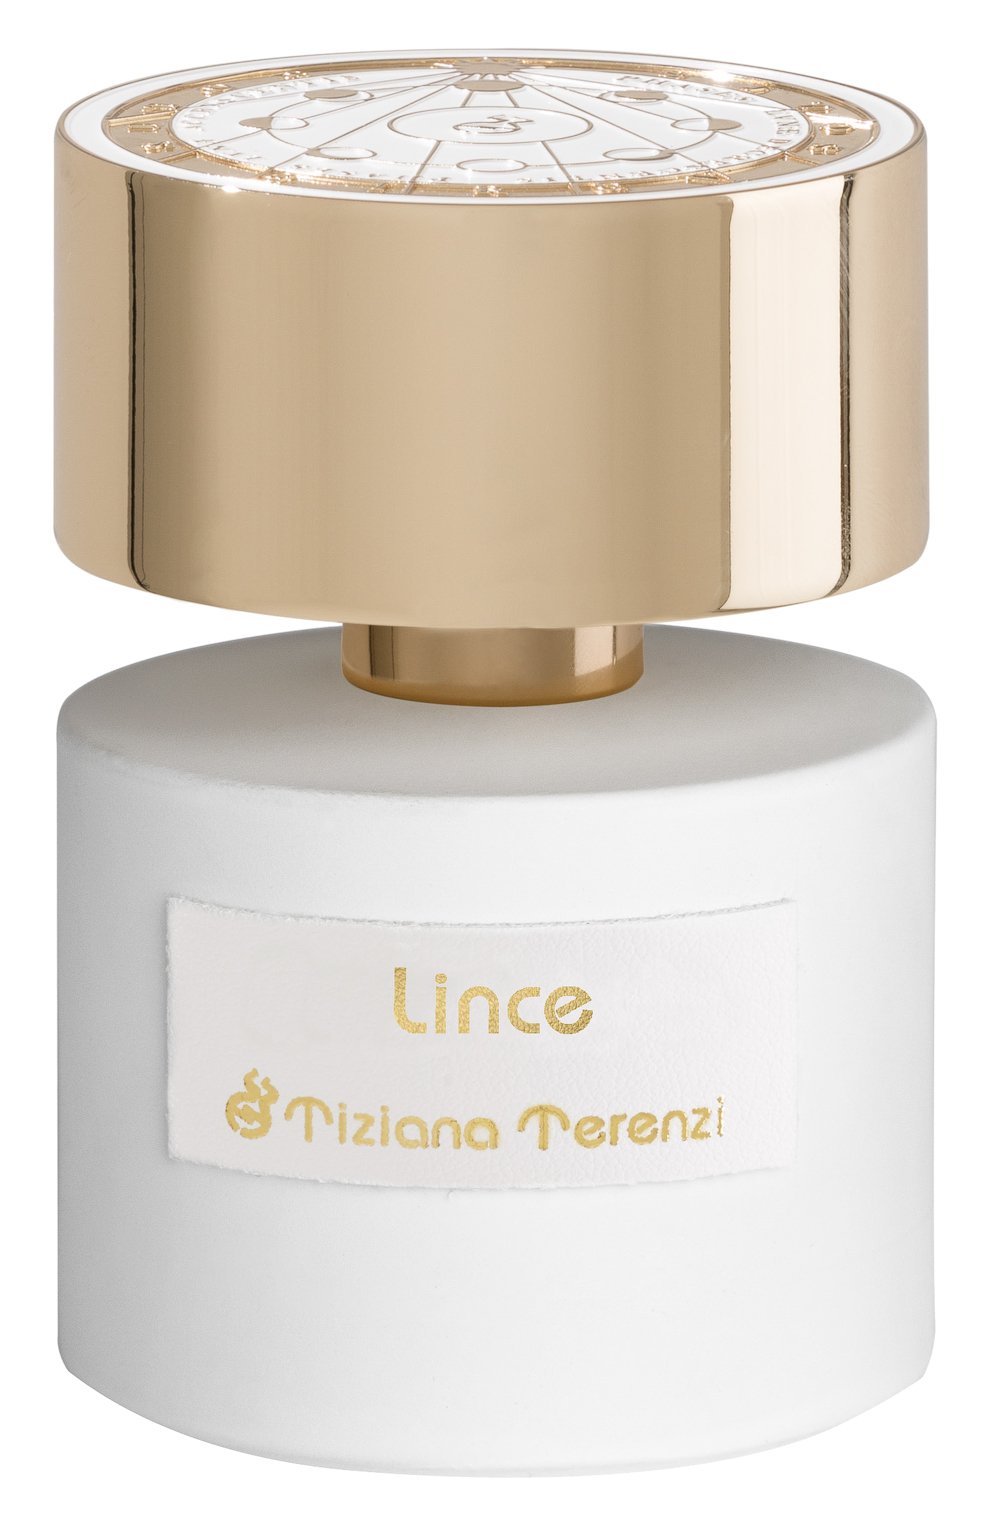 Tiziana Terenzi Lince - parfémovaný extrakt - TESTER 100 ml